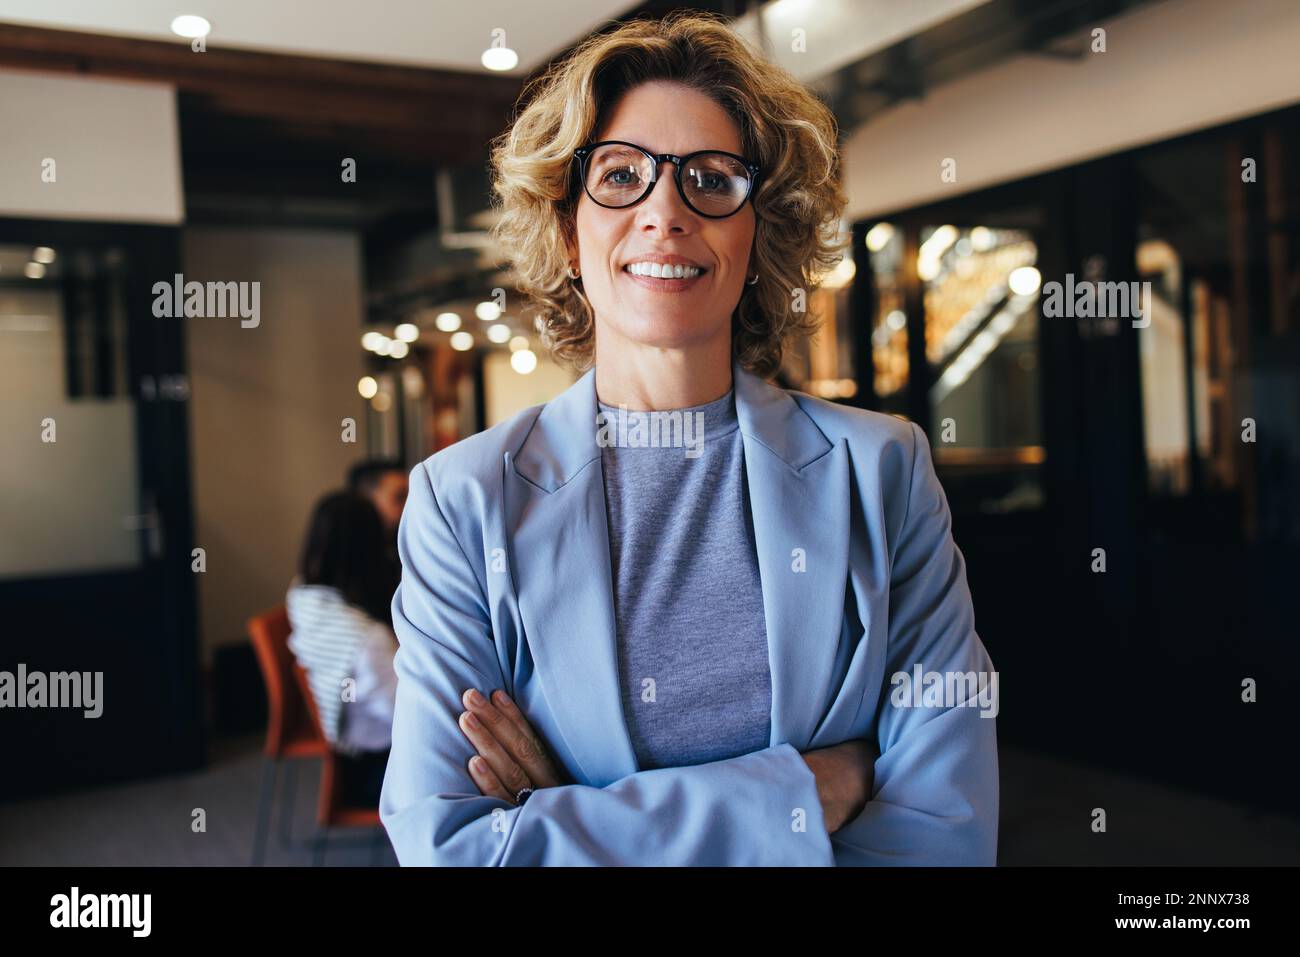 Portrait d'une femme d'affaires debout dans un bureau avec des bras croisés. Femme professionnelle vêtue d'un costume. Femme travaillant dans un lieu de travail d'entreprise, elle Banque D'Images